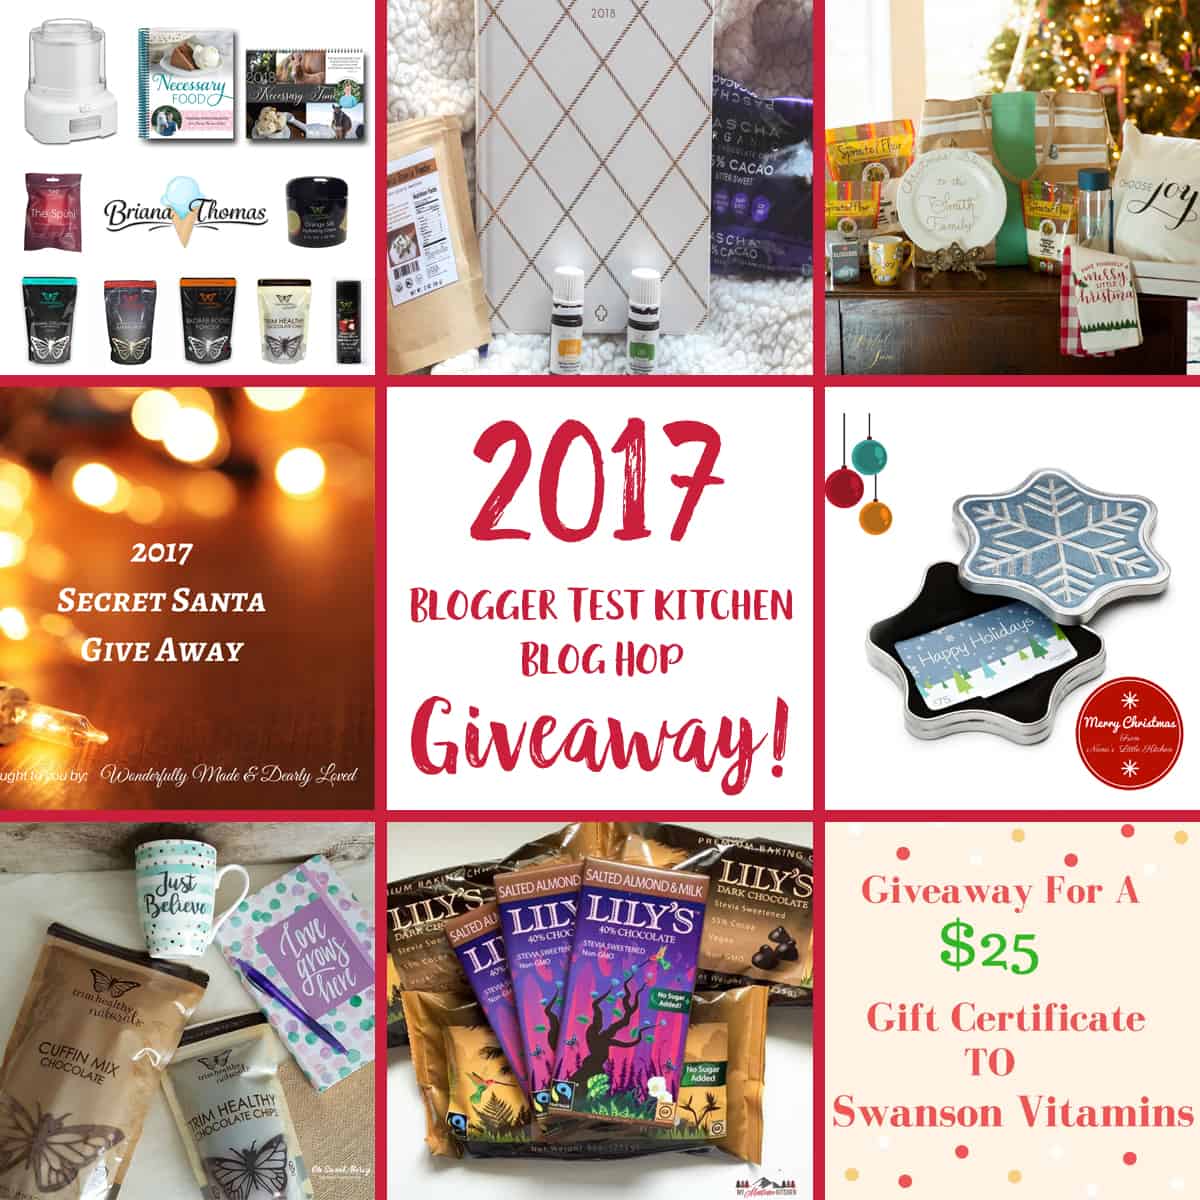 2017 Blogger Test Kitchen Blog Hop Giveaway 